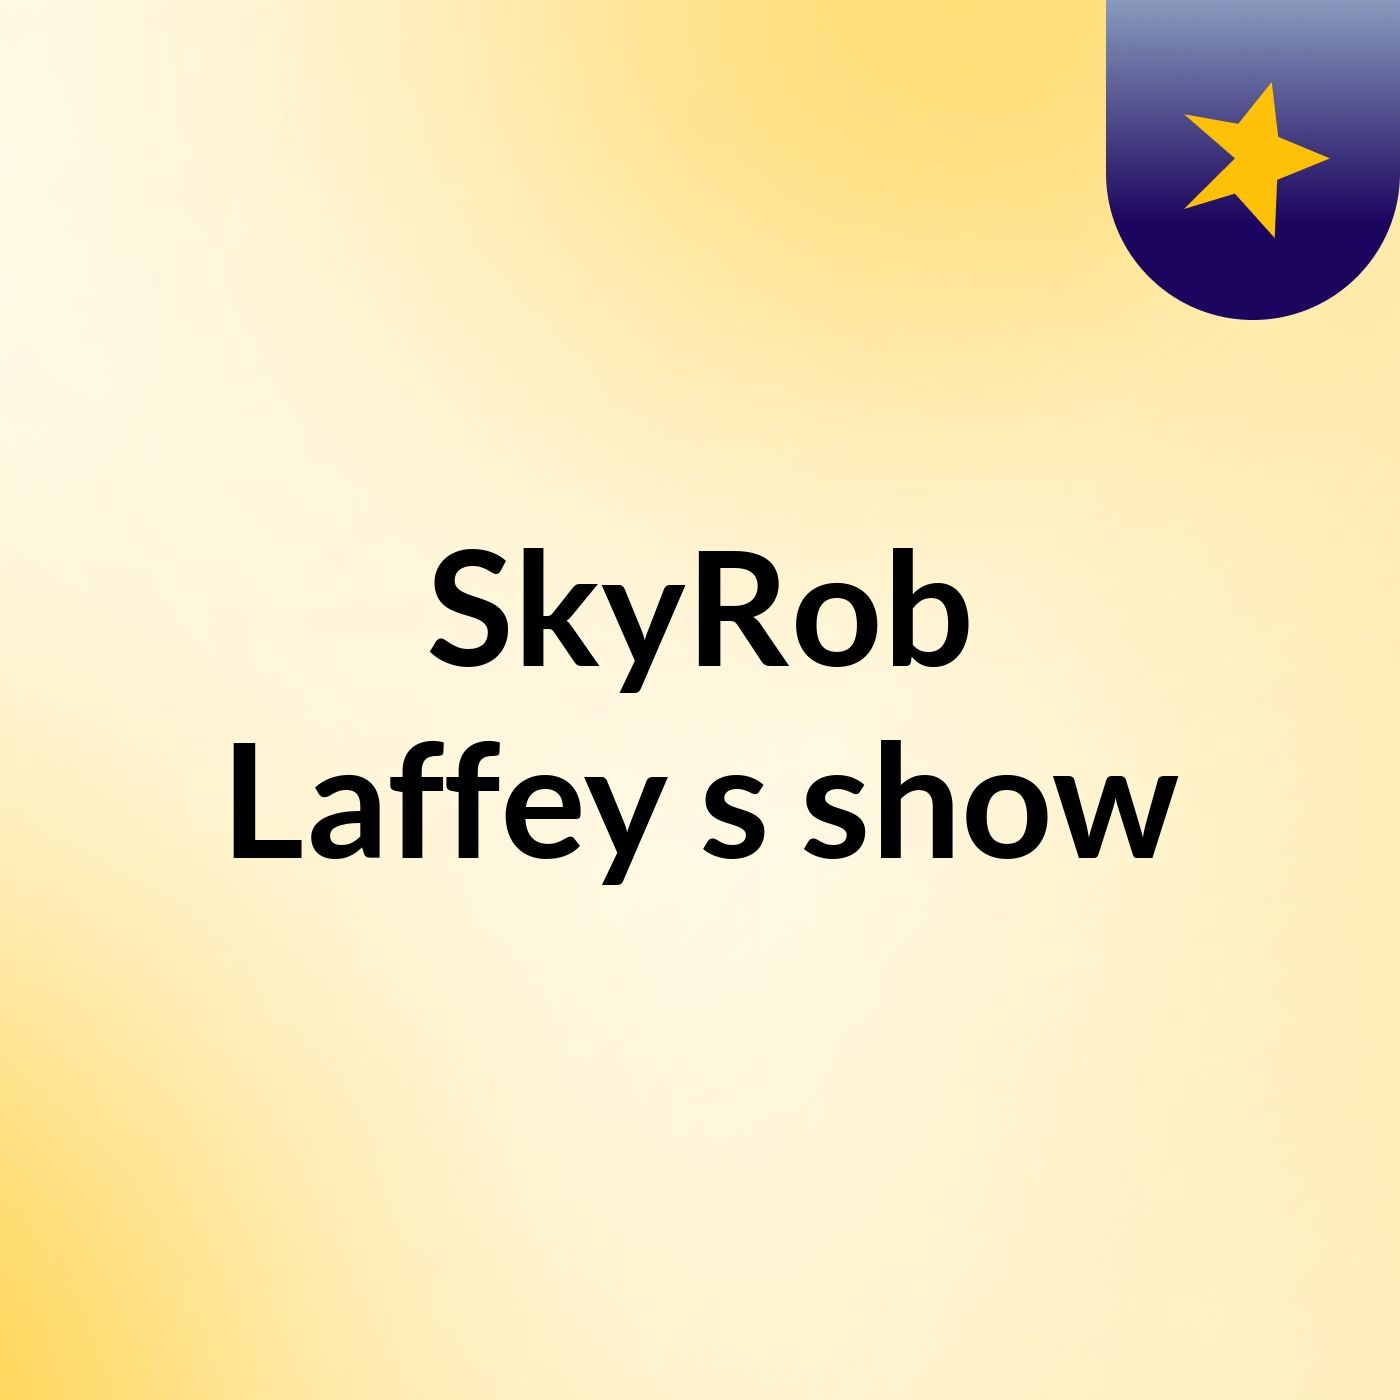 SkyRob Laffey's show